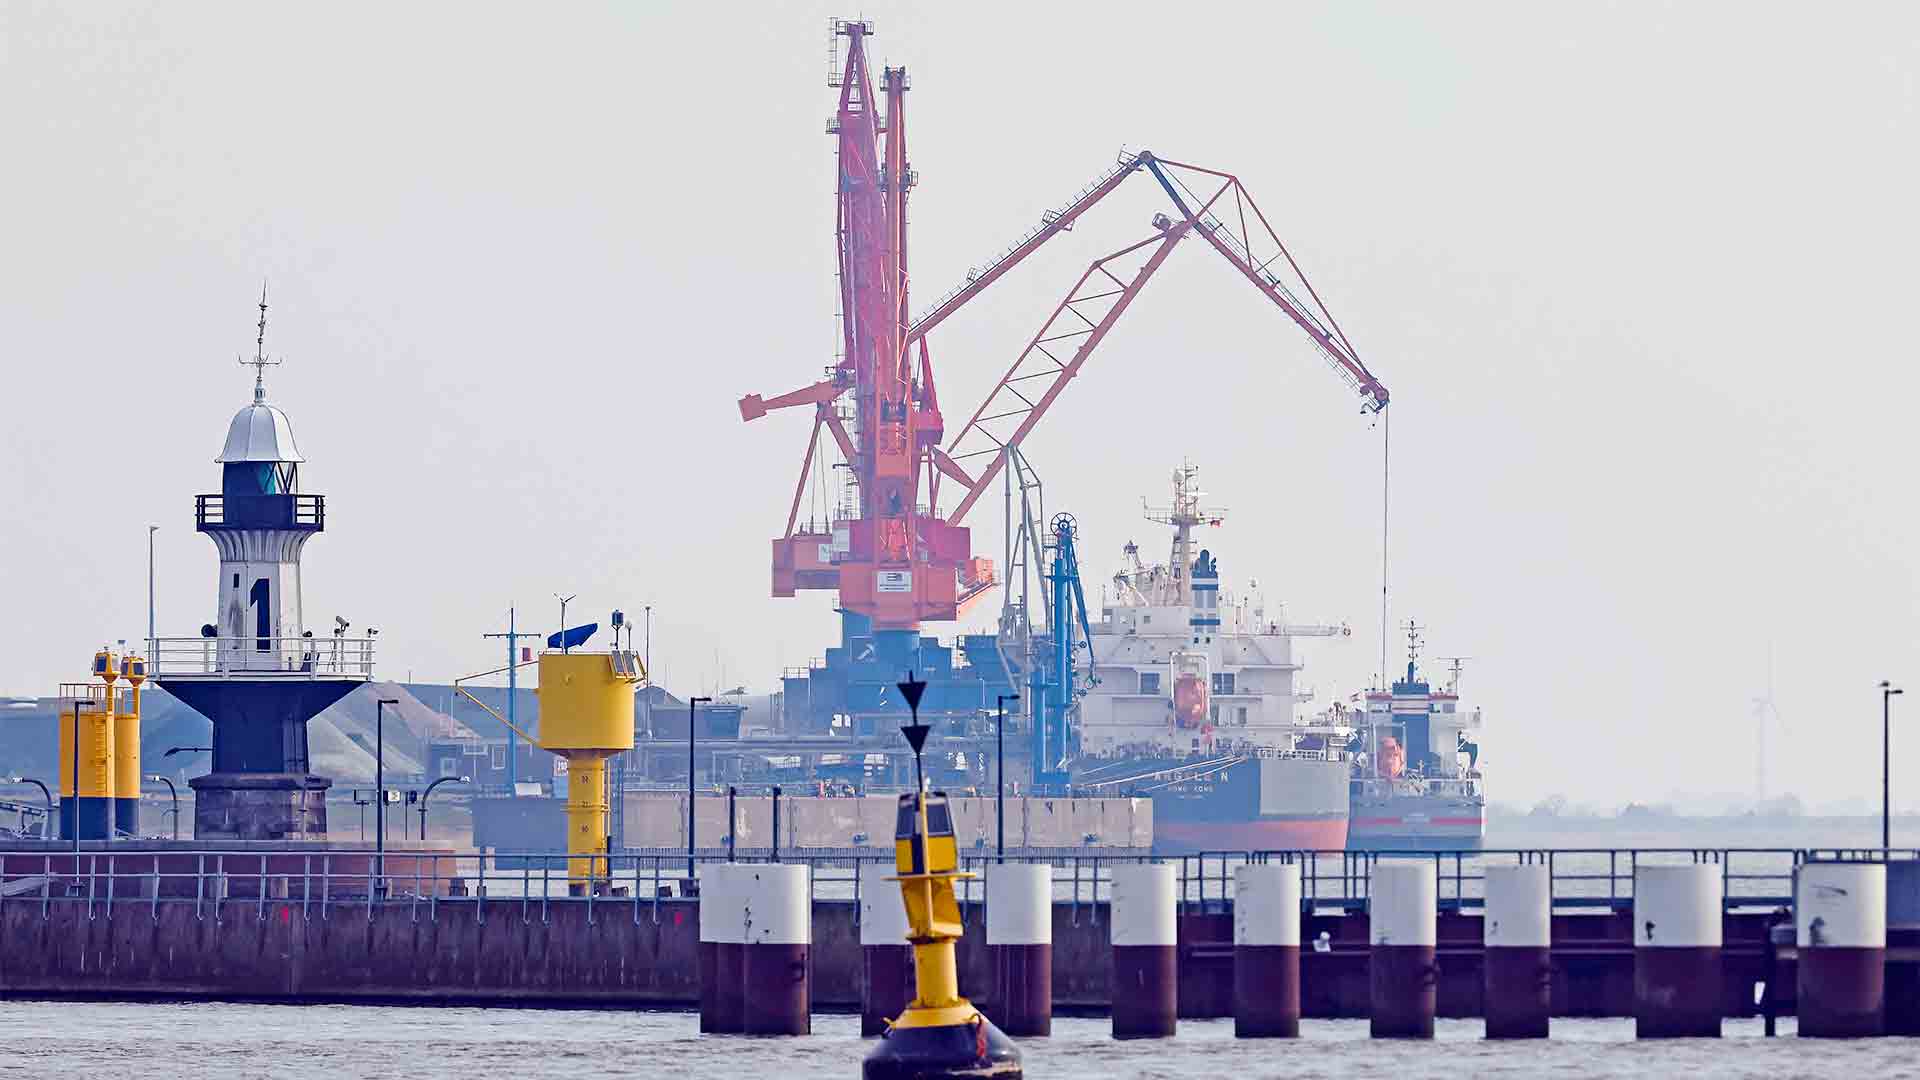 Möglicher Standort für LNG-Terminal Hafen Brunsbüttel